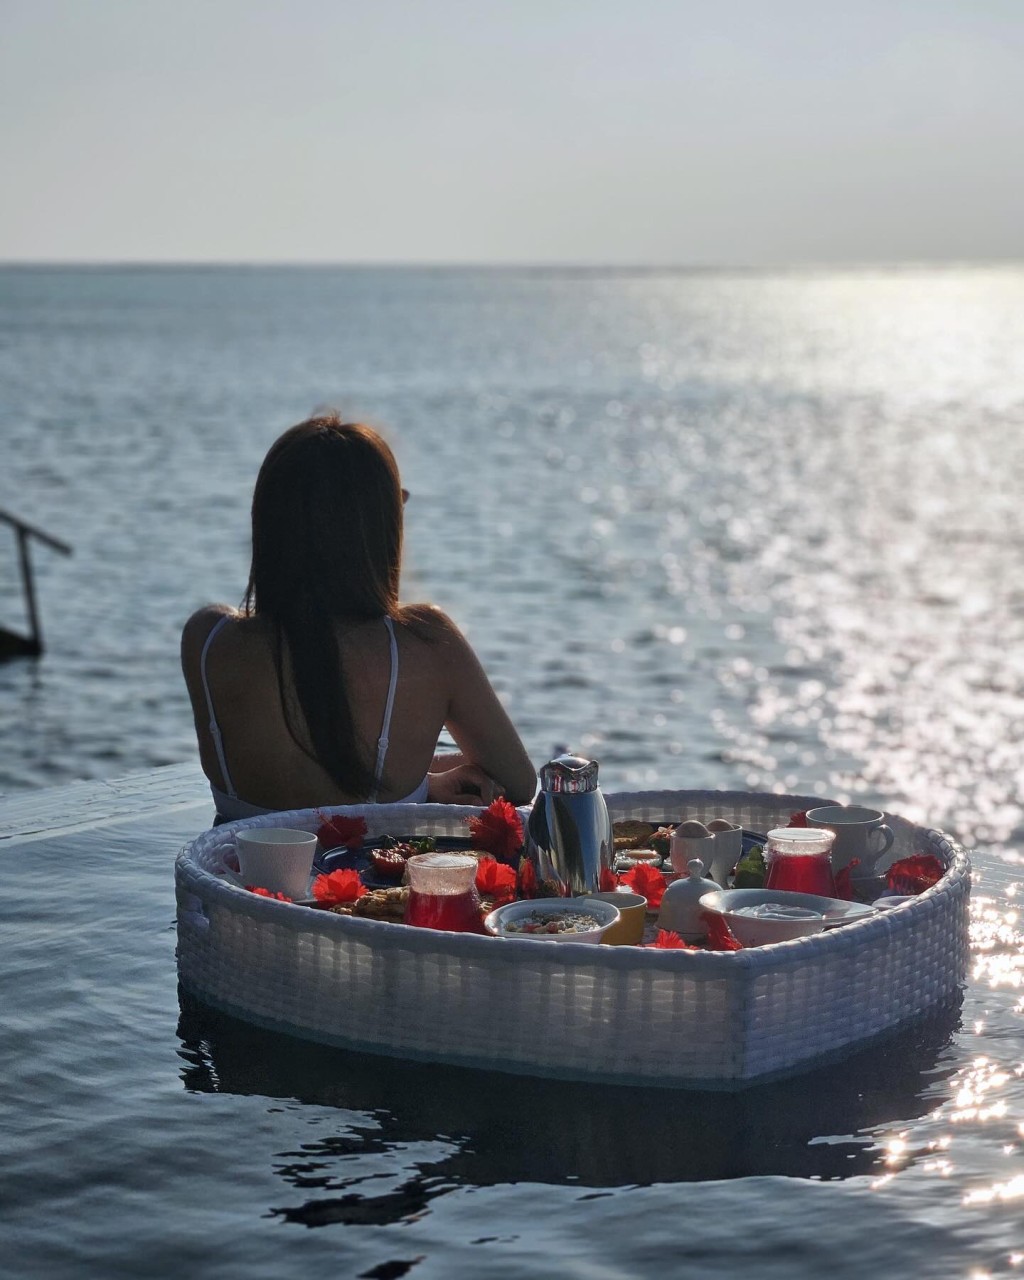 锺嘉欣一边欣赏180度无敌海景、一边叹心形漂浮早餐，气氛浪漫又写意。